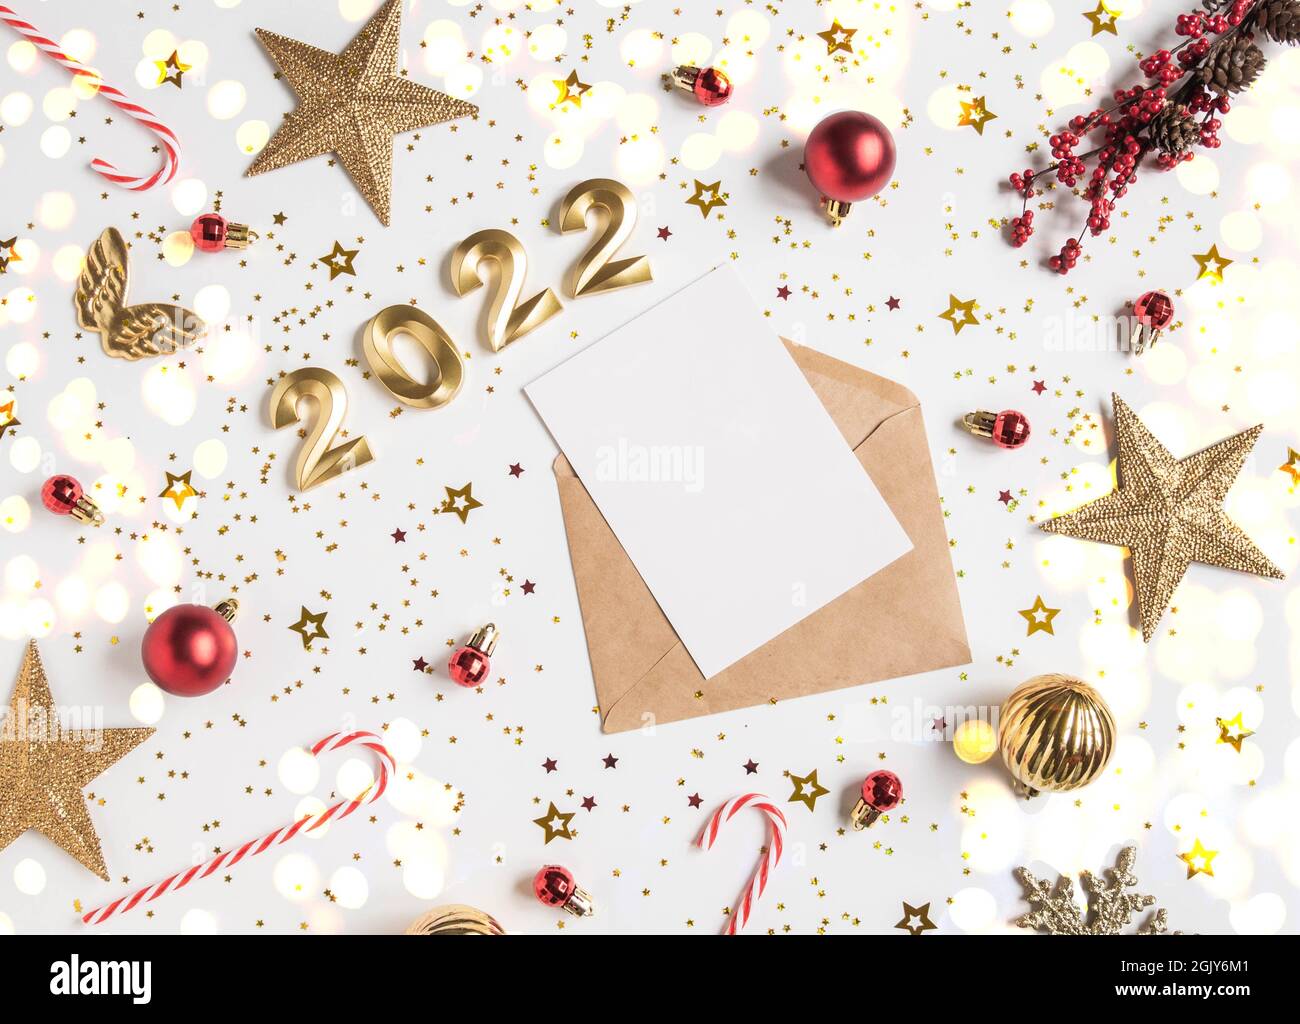 Sobre marrón abierto con tarjeta blanca en blanco y números de 2022 para el año que viene y decoraciones navideñas de temporada sobre fondo blanco. Vista superior. Foto de stock